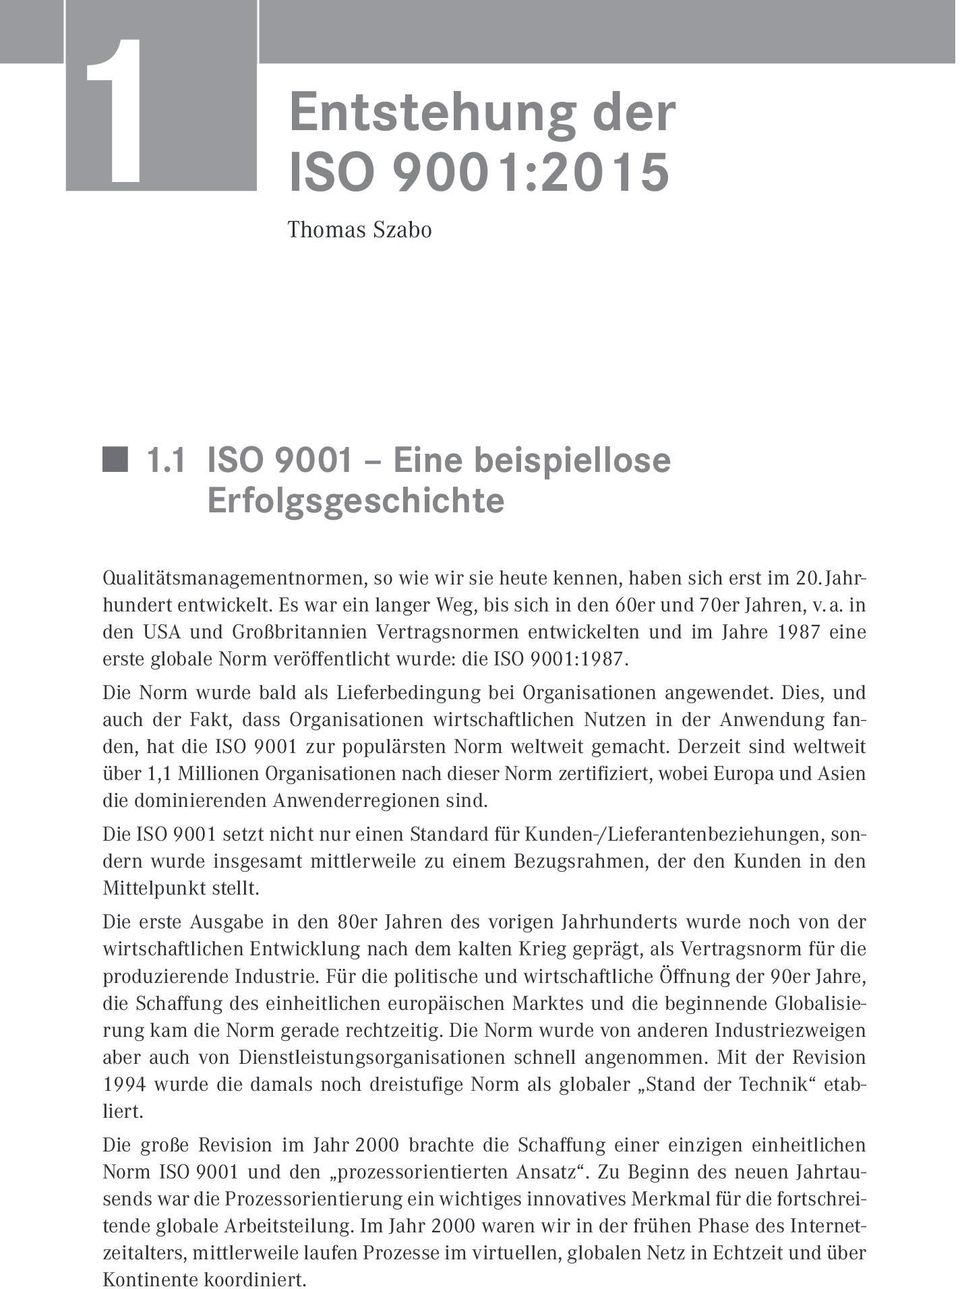 in den USA und Großbritannien Vertragsnormen entwickelten und im Jahre 1987 eine erste globale Norm veröffentlicht wurde: die ISO 9001:1987.